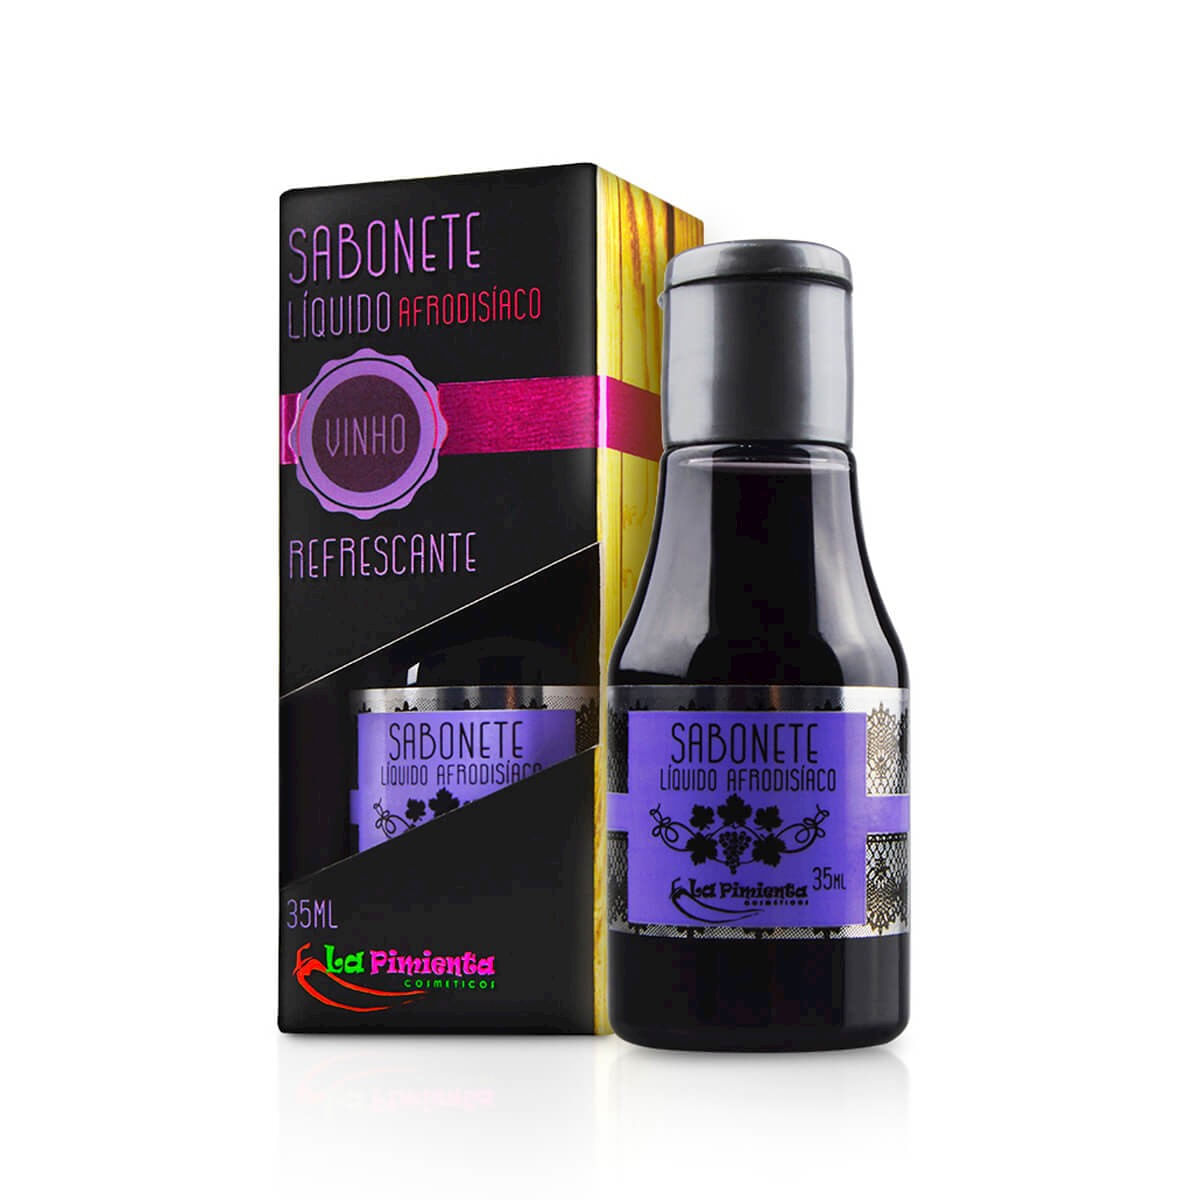 Sabonete Líquido Refrescante e Afrodisíaco com Aroma de Vinho 35ml La Pimienta